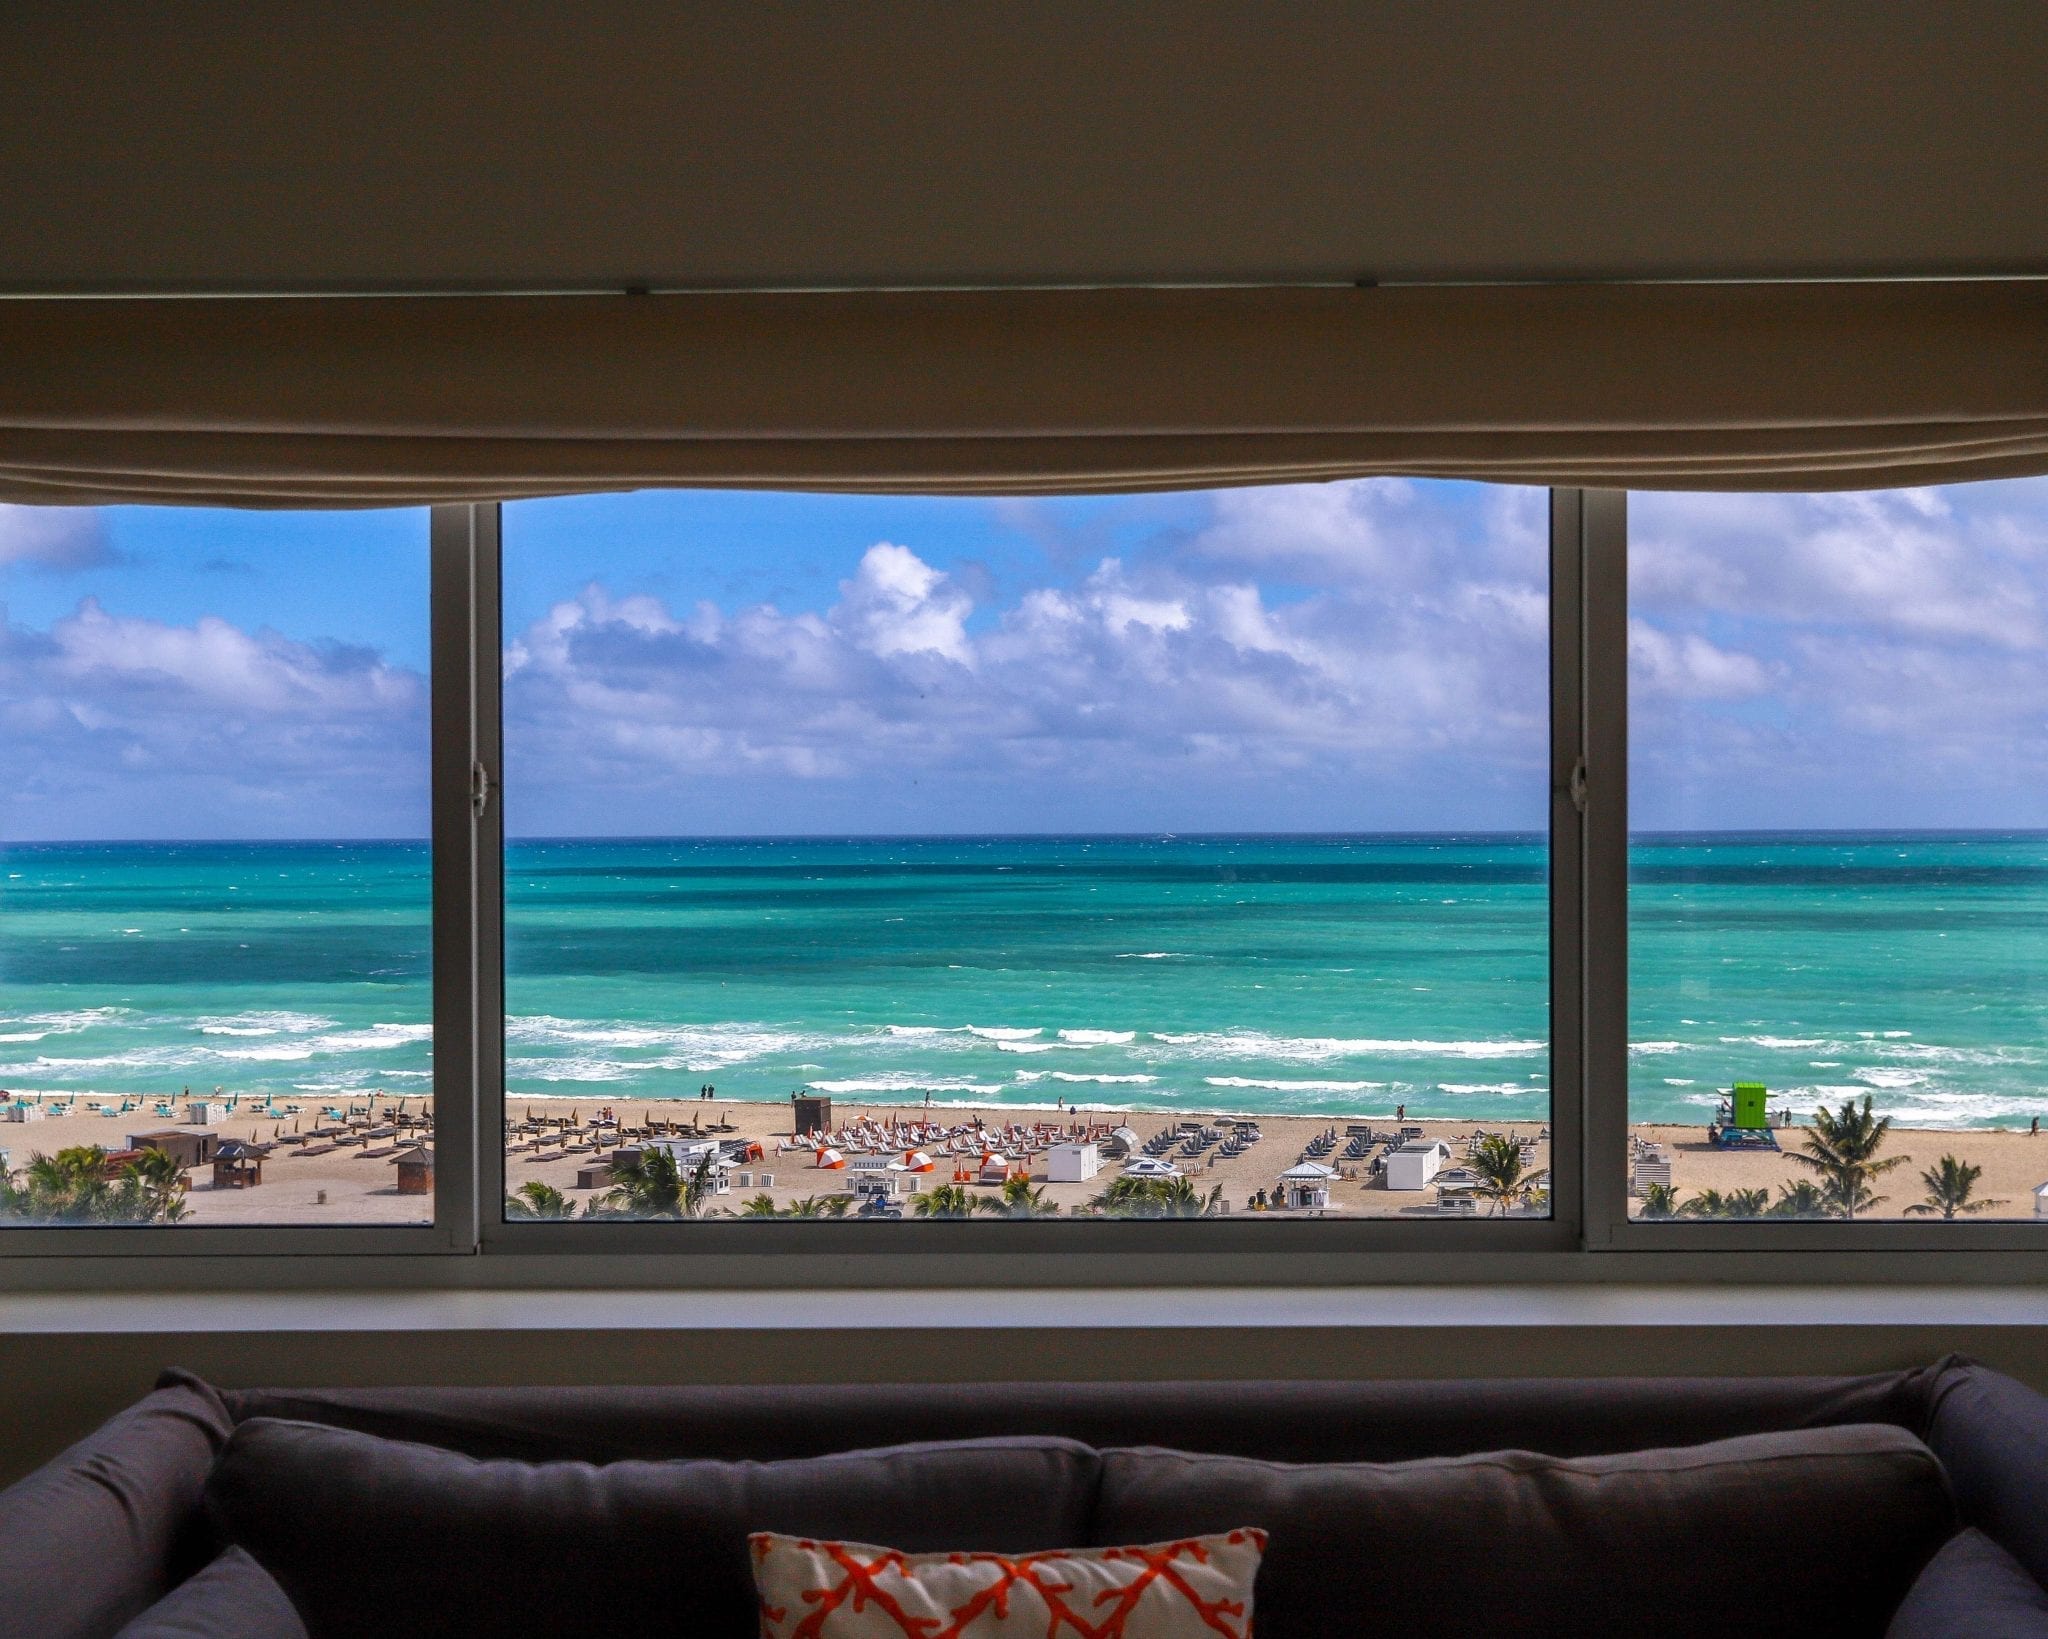 Nautilus by Arlo Deluxe Oceanfront King hotel room window view of ocean